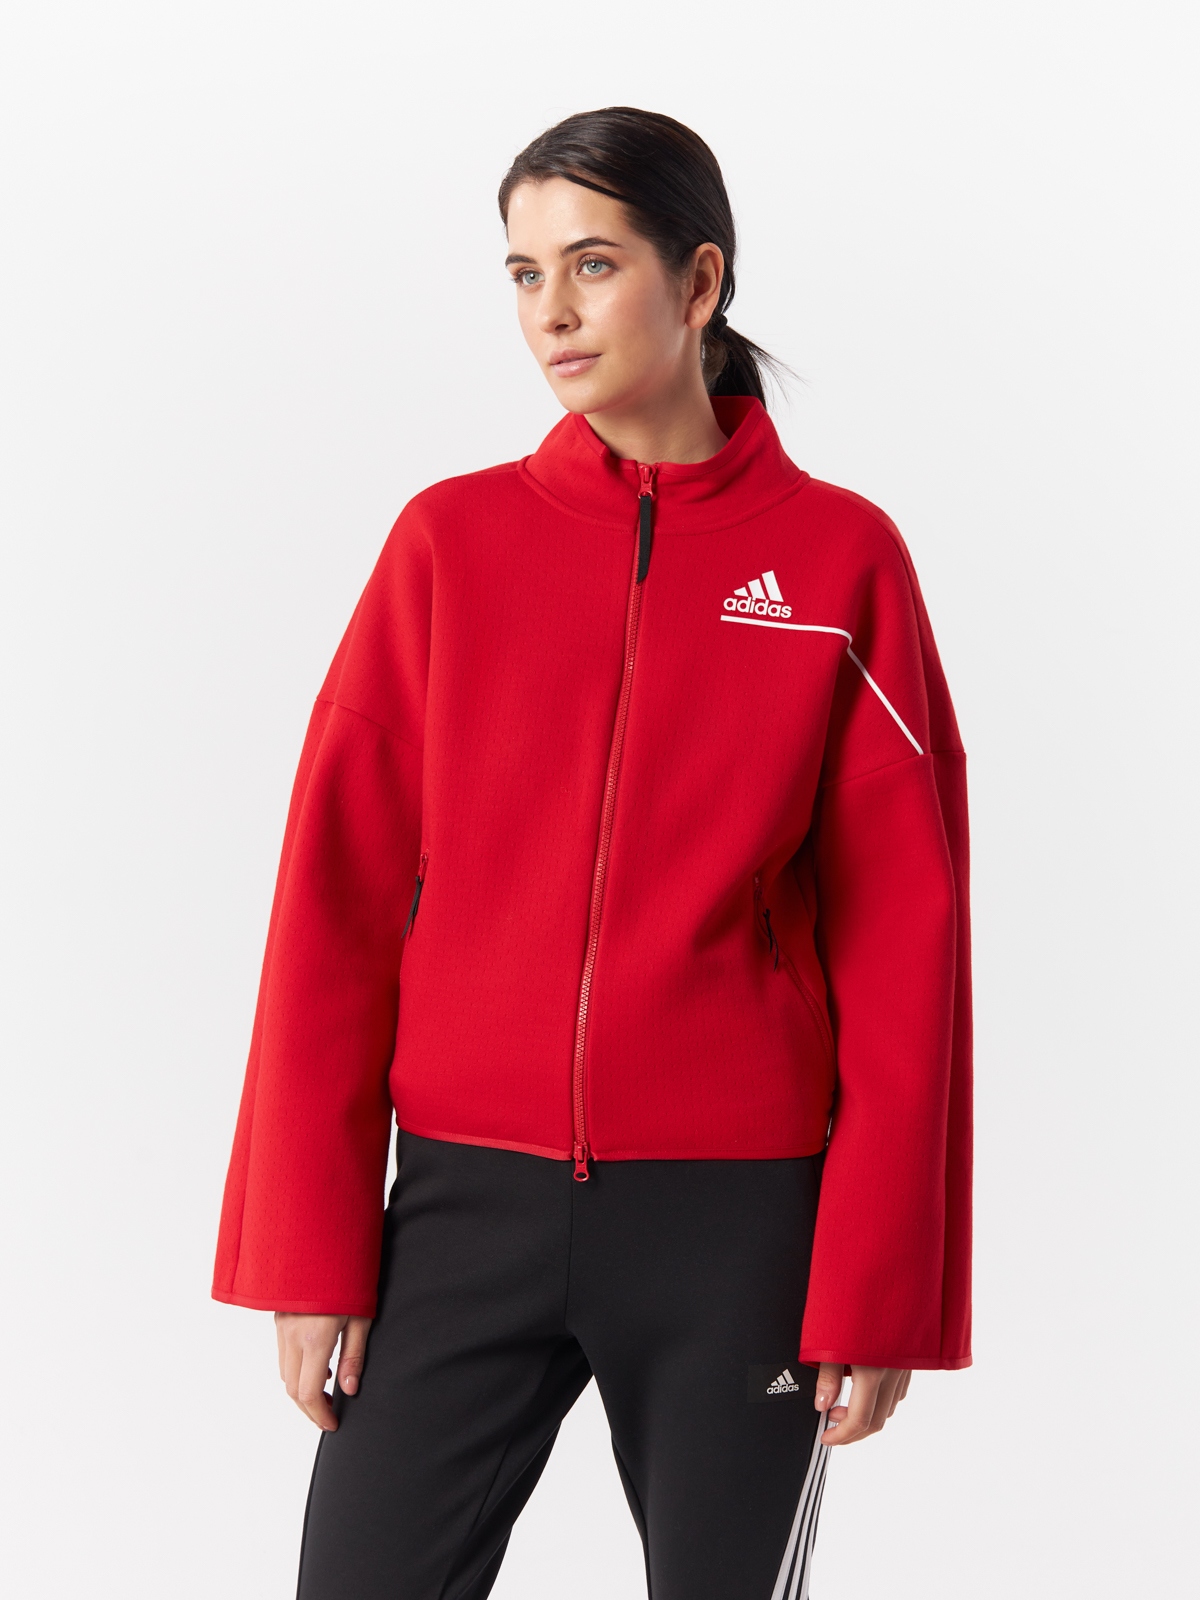 Олимпийка женская Adidas GM3287 красная 2XS